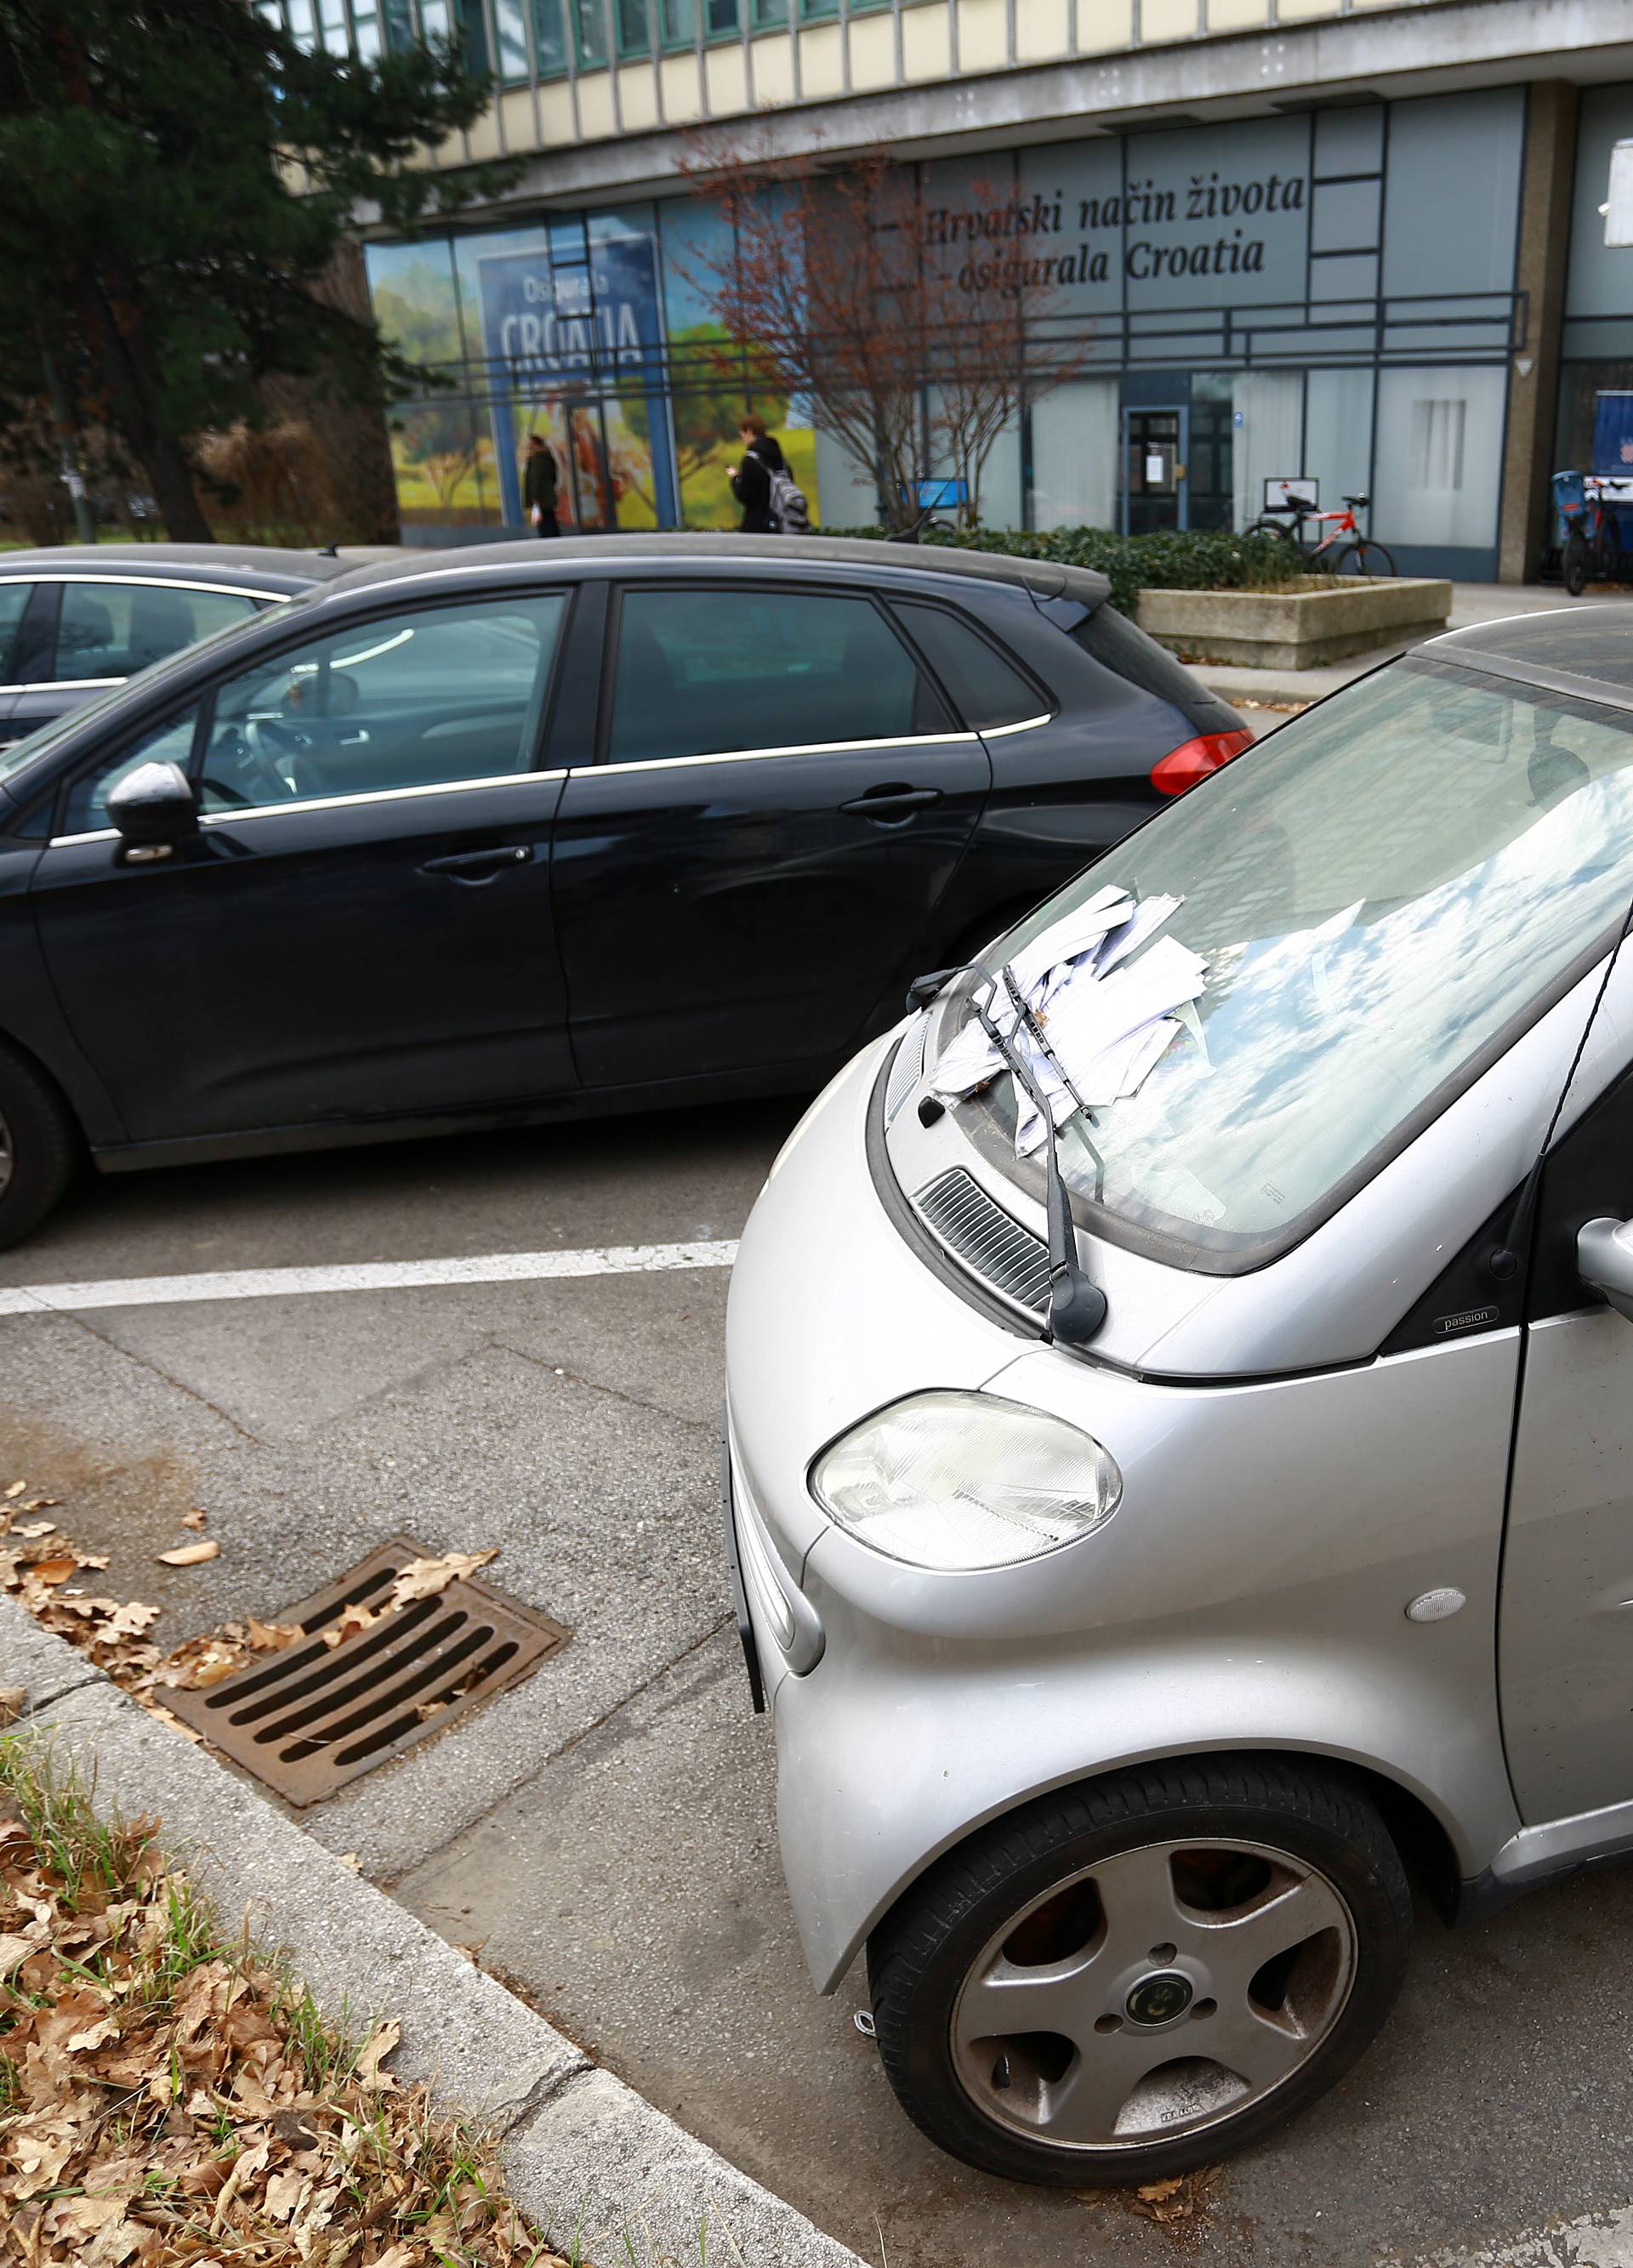 Usred Zagreba: Na parkingu je mjesecima, kazne se gomilaju!